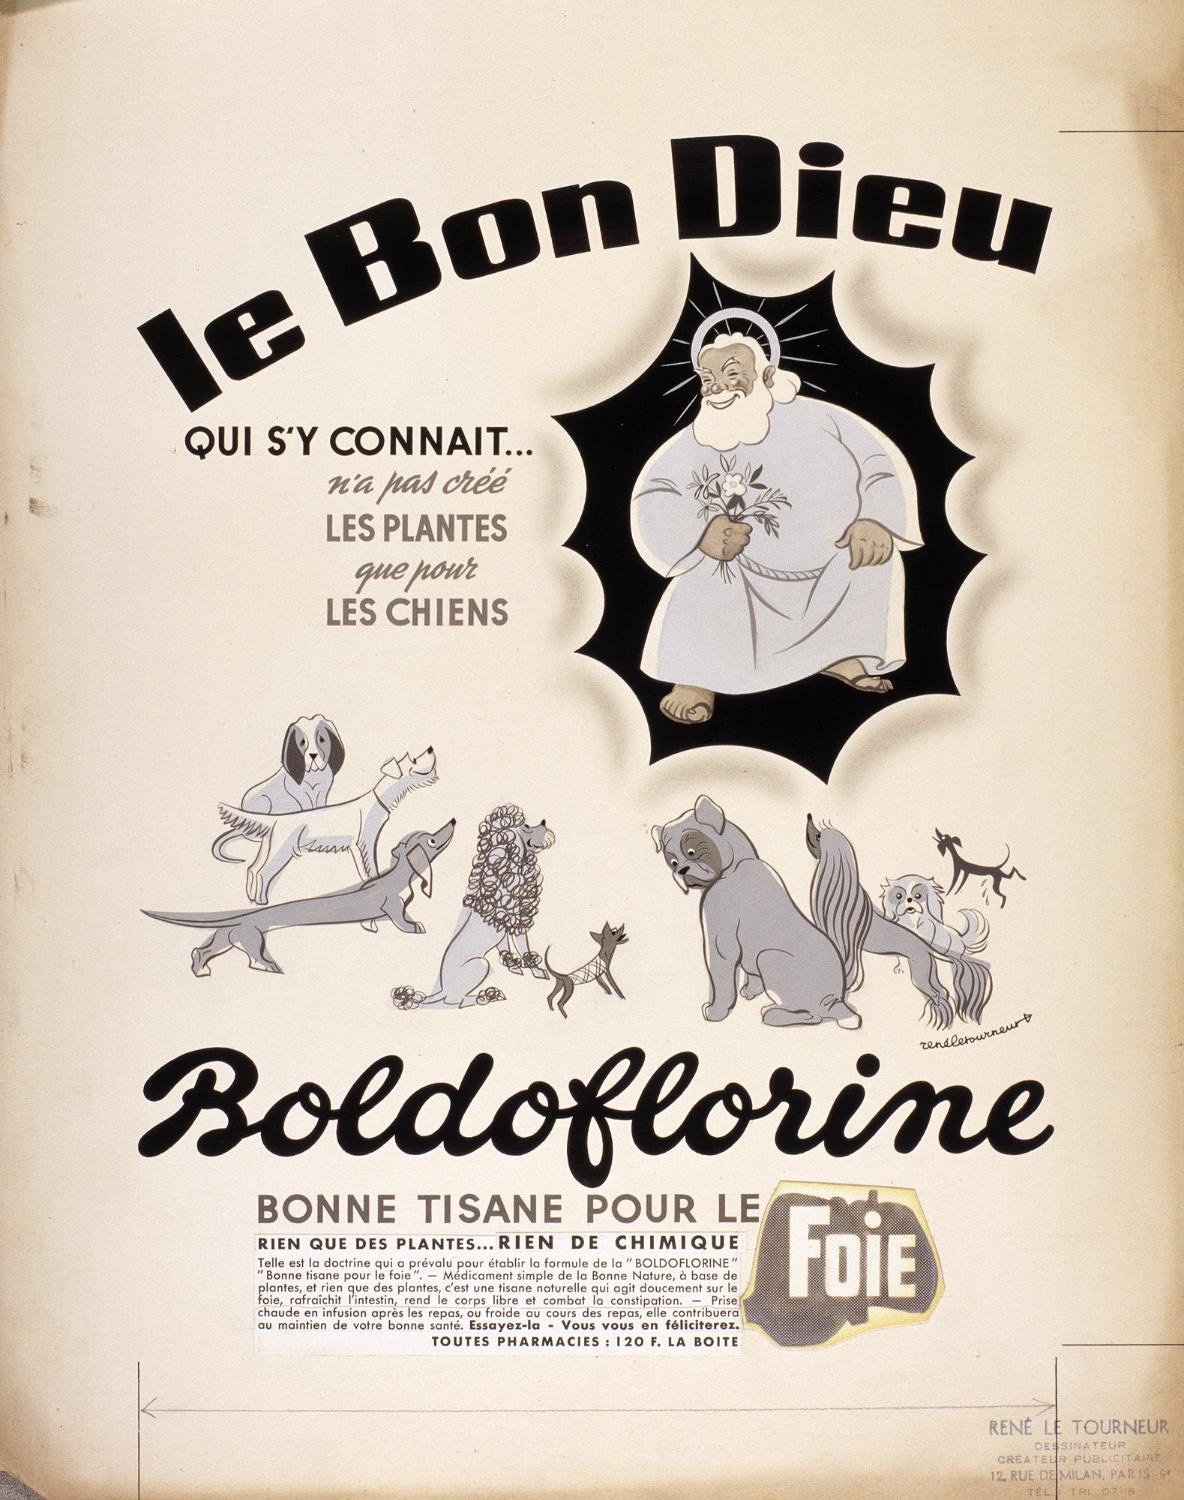 affiches, documents publicitaires divers et emballages pour les tisanes Boldoflorine, Calmiflorine et Saliflorine